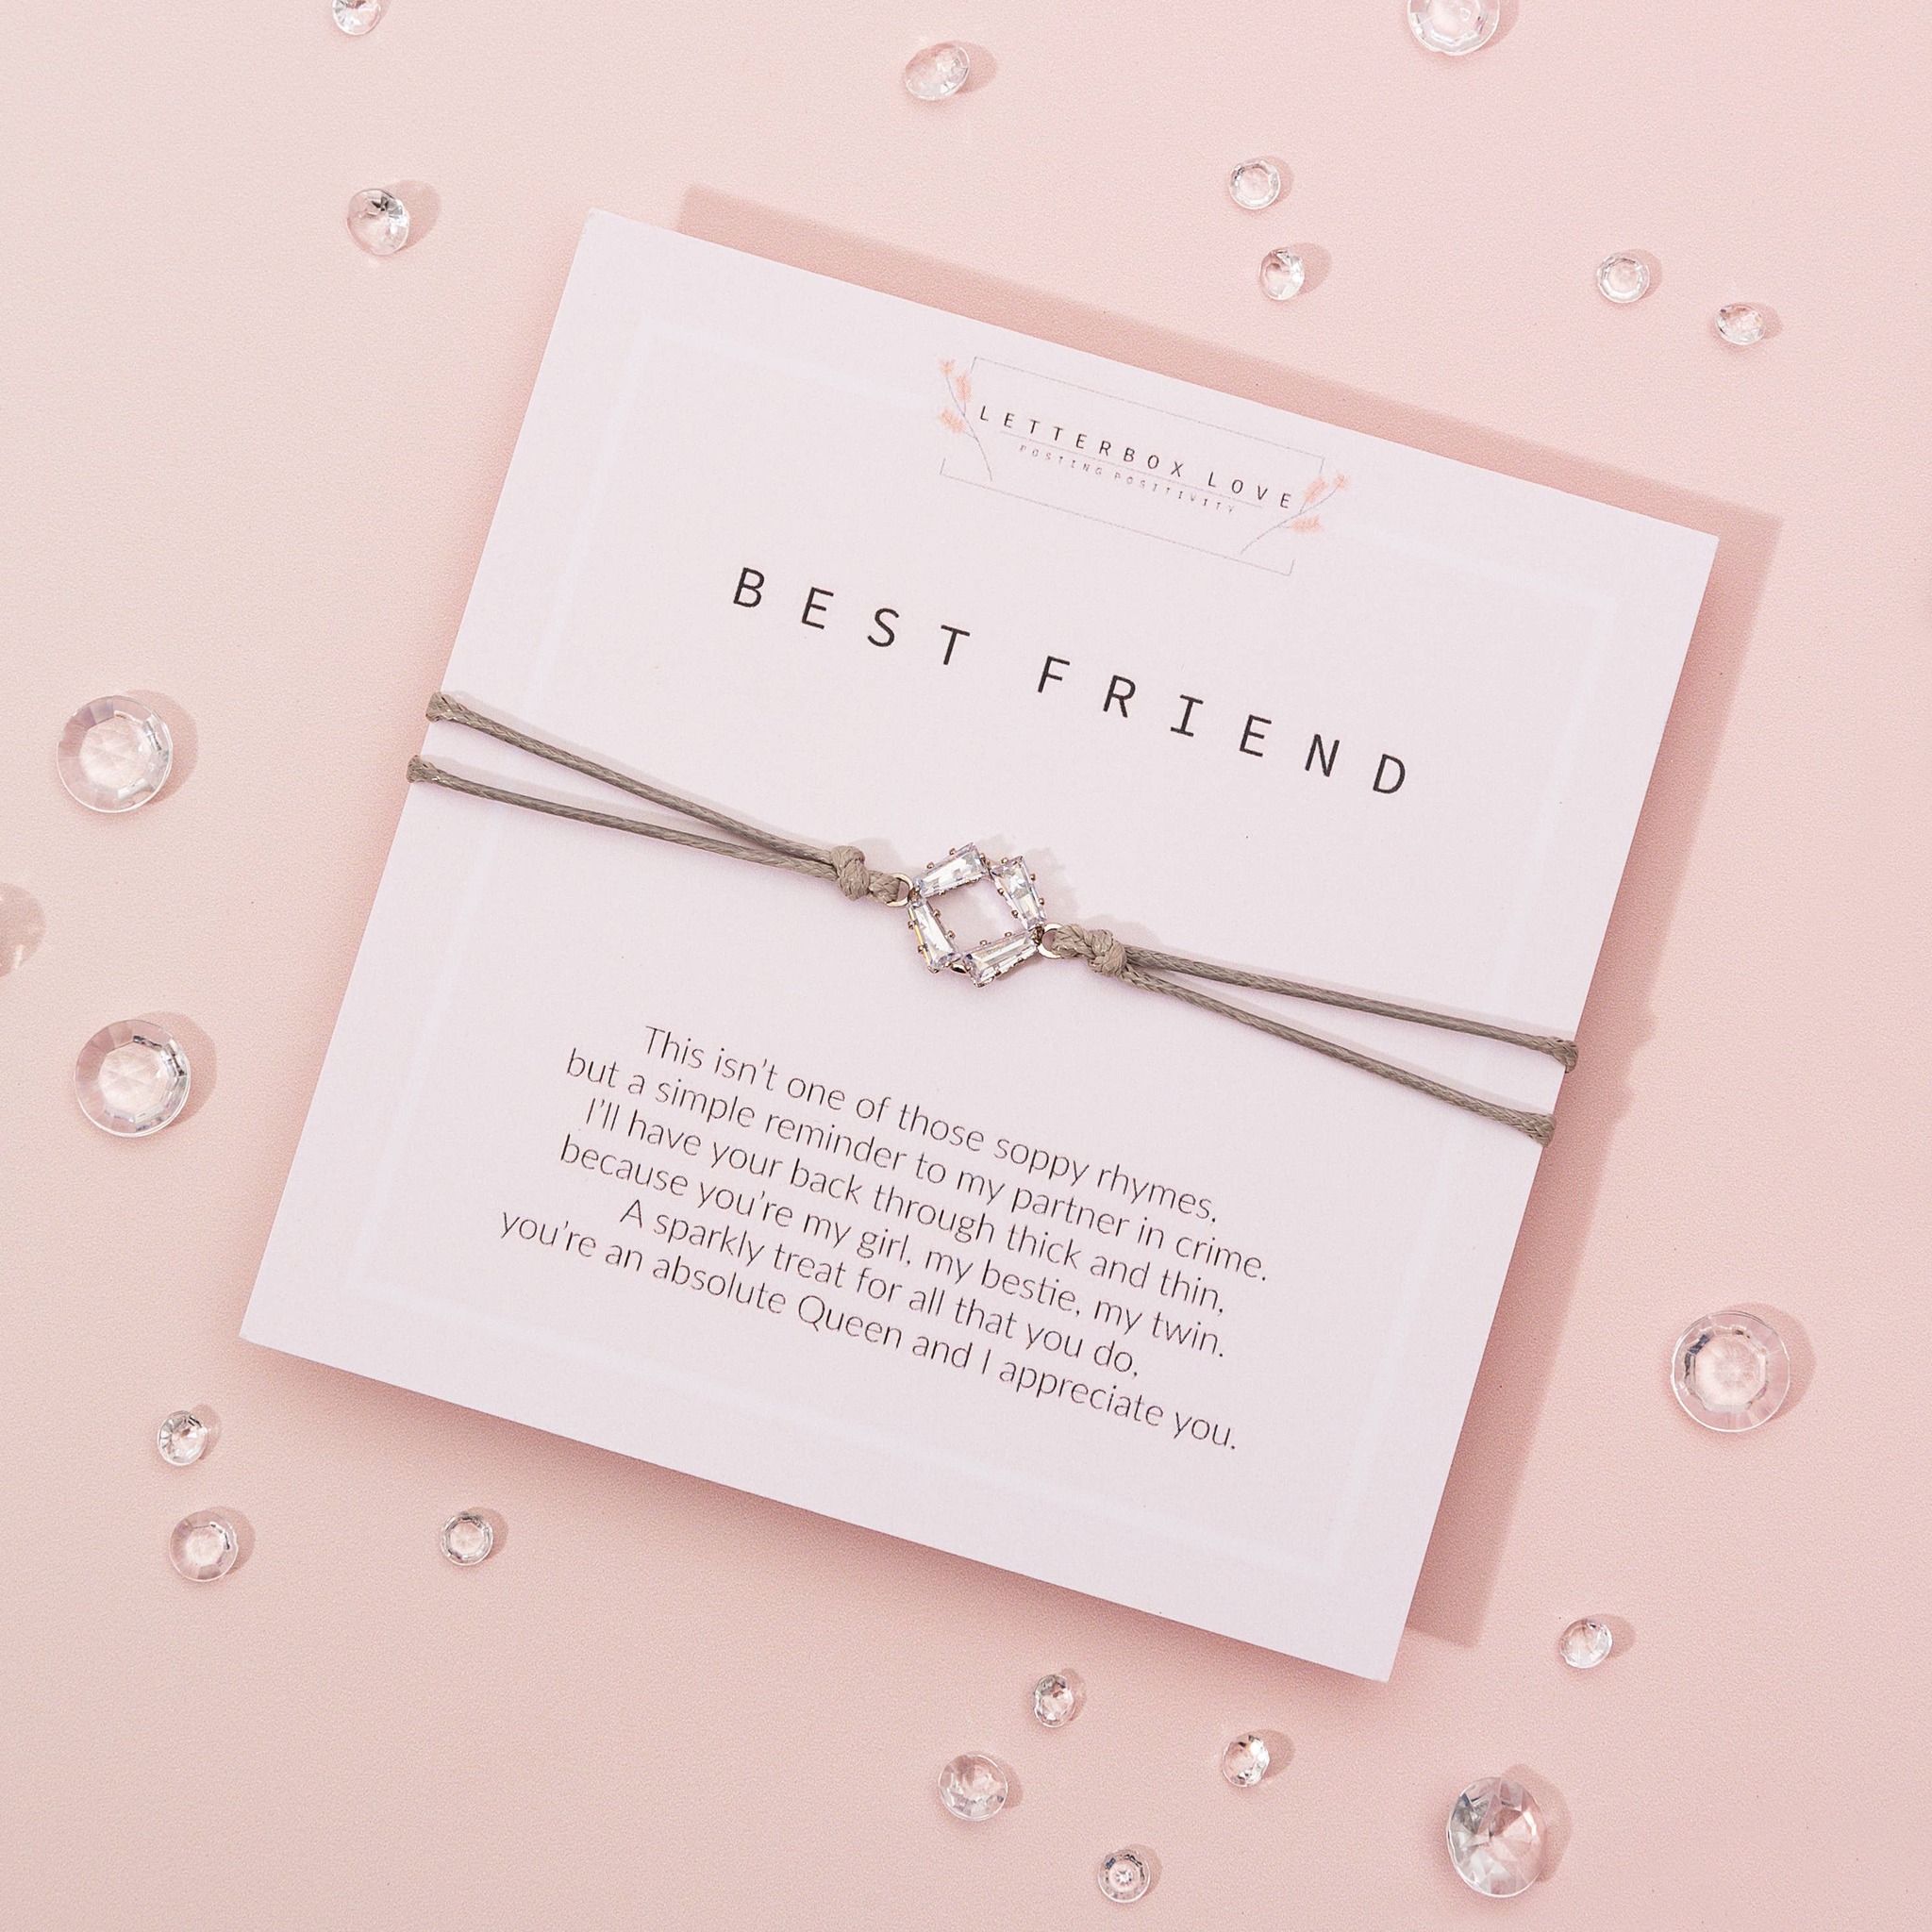 Letterbox Love - Best Friend Wish Bracelet